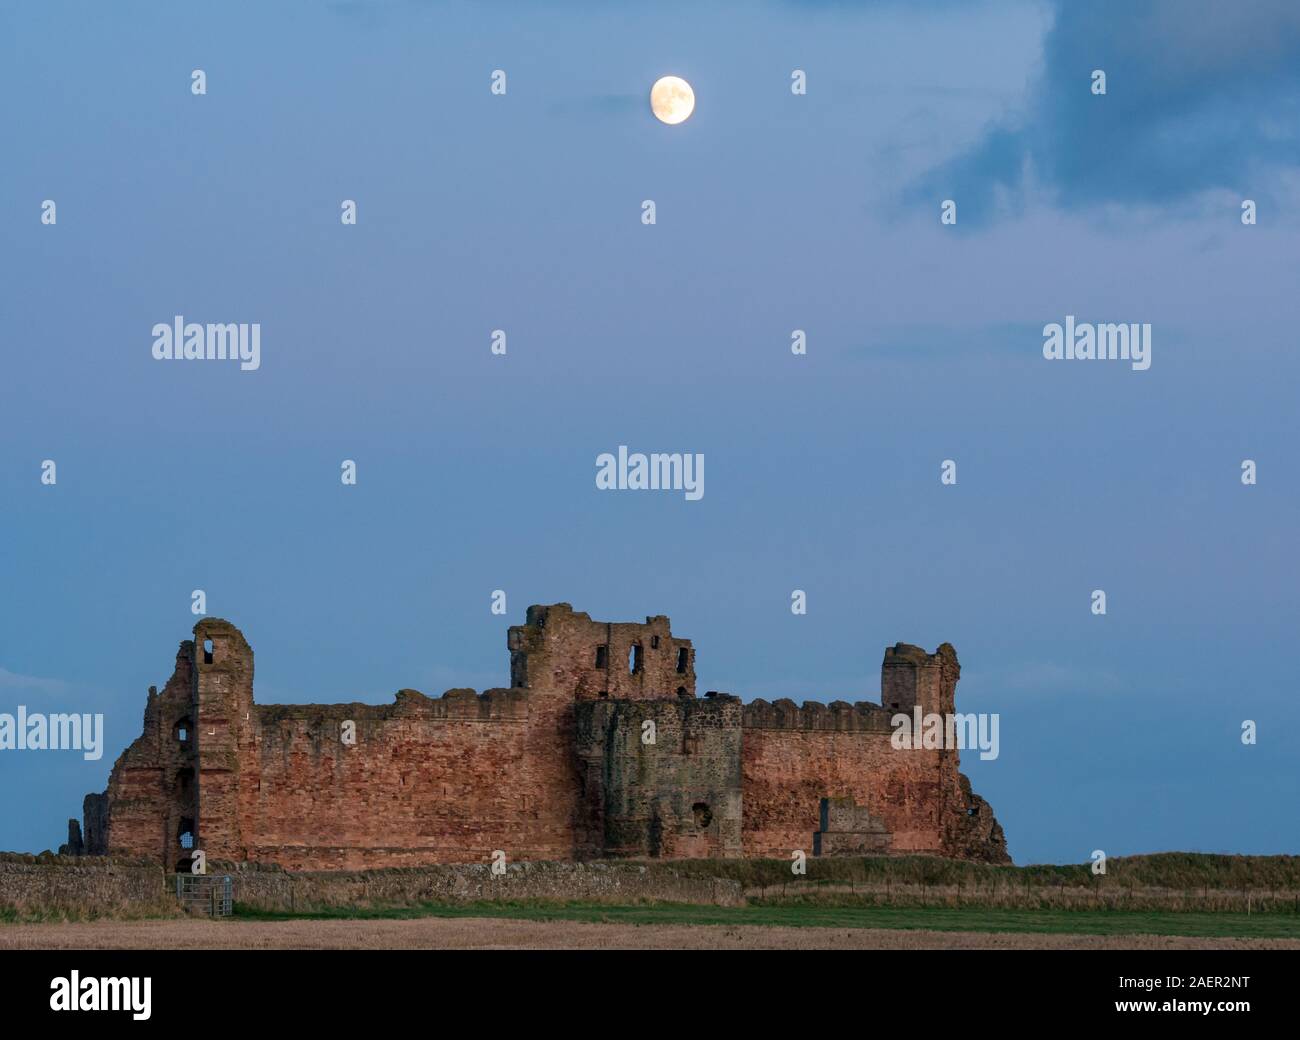 Ein klarer Himmel mit Waxing gibbous Mond über dem zerstörten Vorhangfassade des 14.jahrhunderts Tantallon Castle Ruins steigt, East Lothian, Schottland, Großbritannien Stockfoto